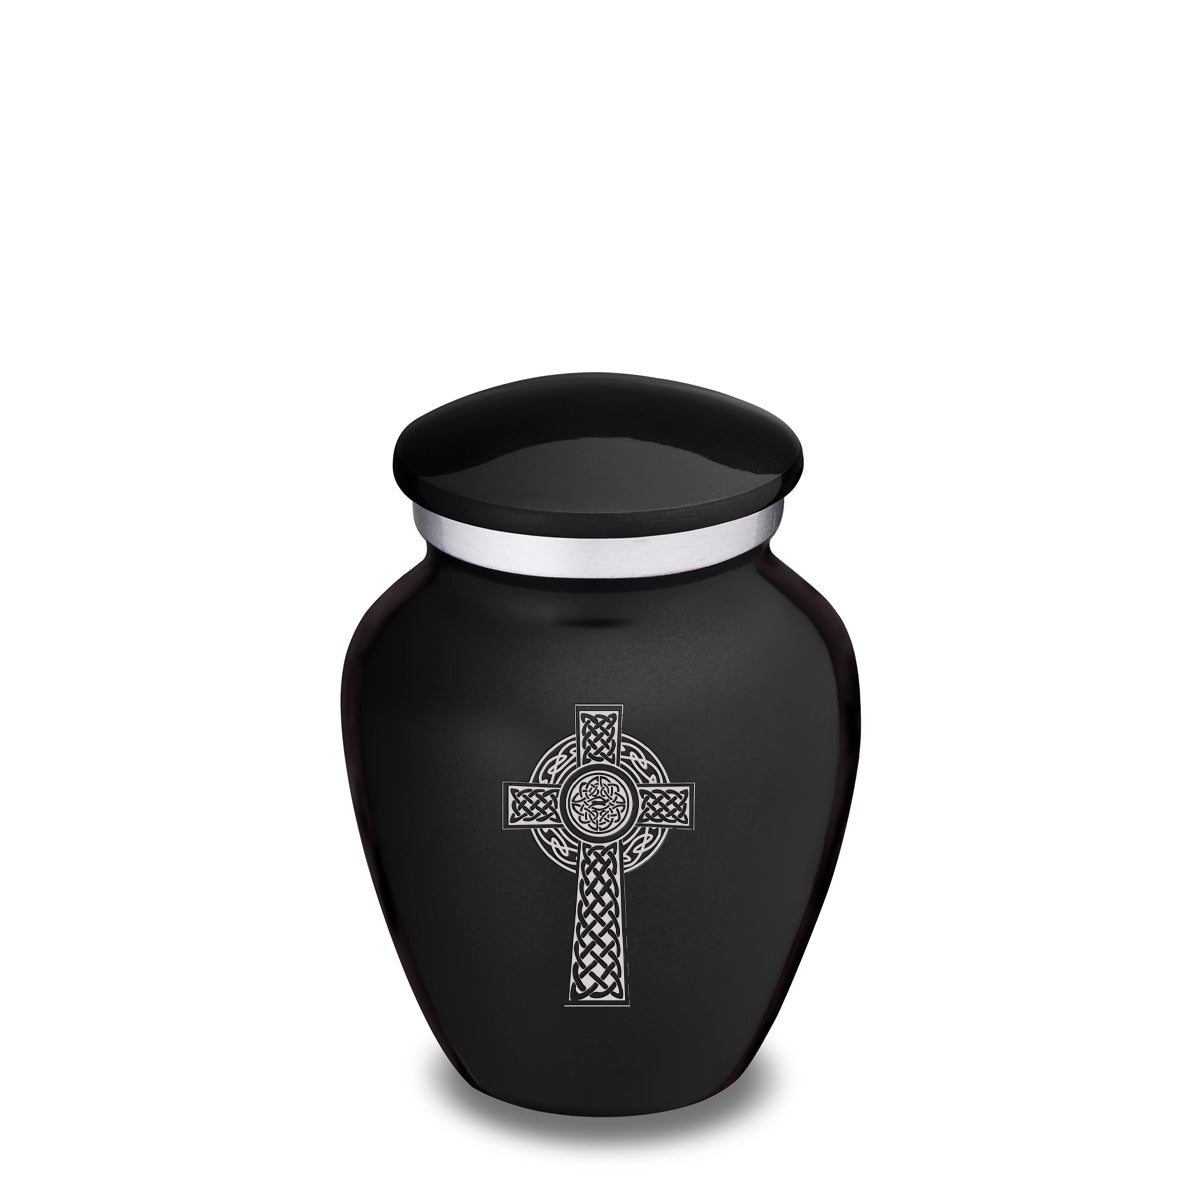 Keepsake Embrace Black Celtic Cross Cremation Urn